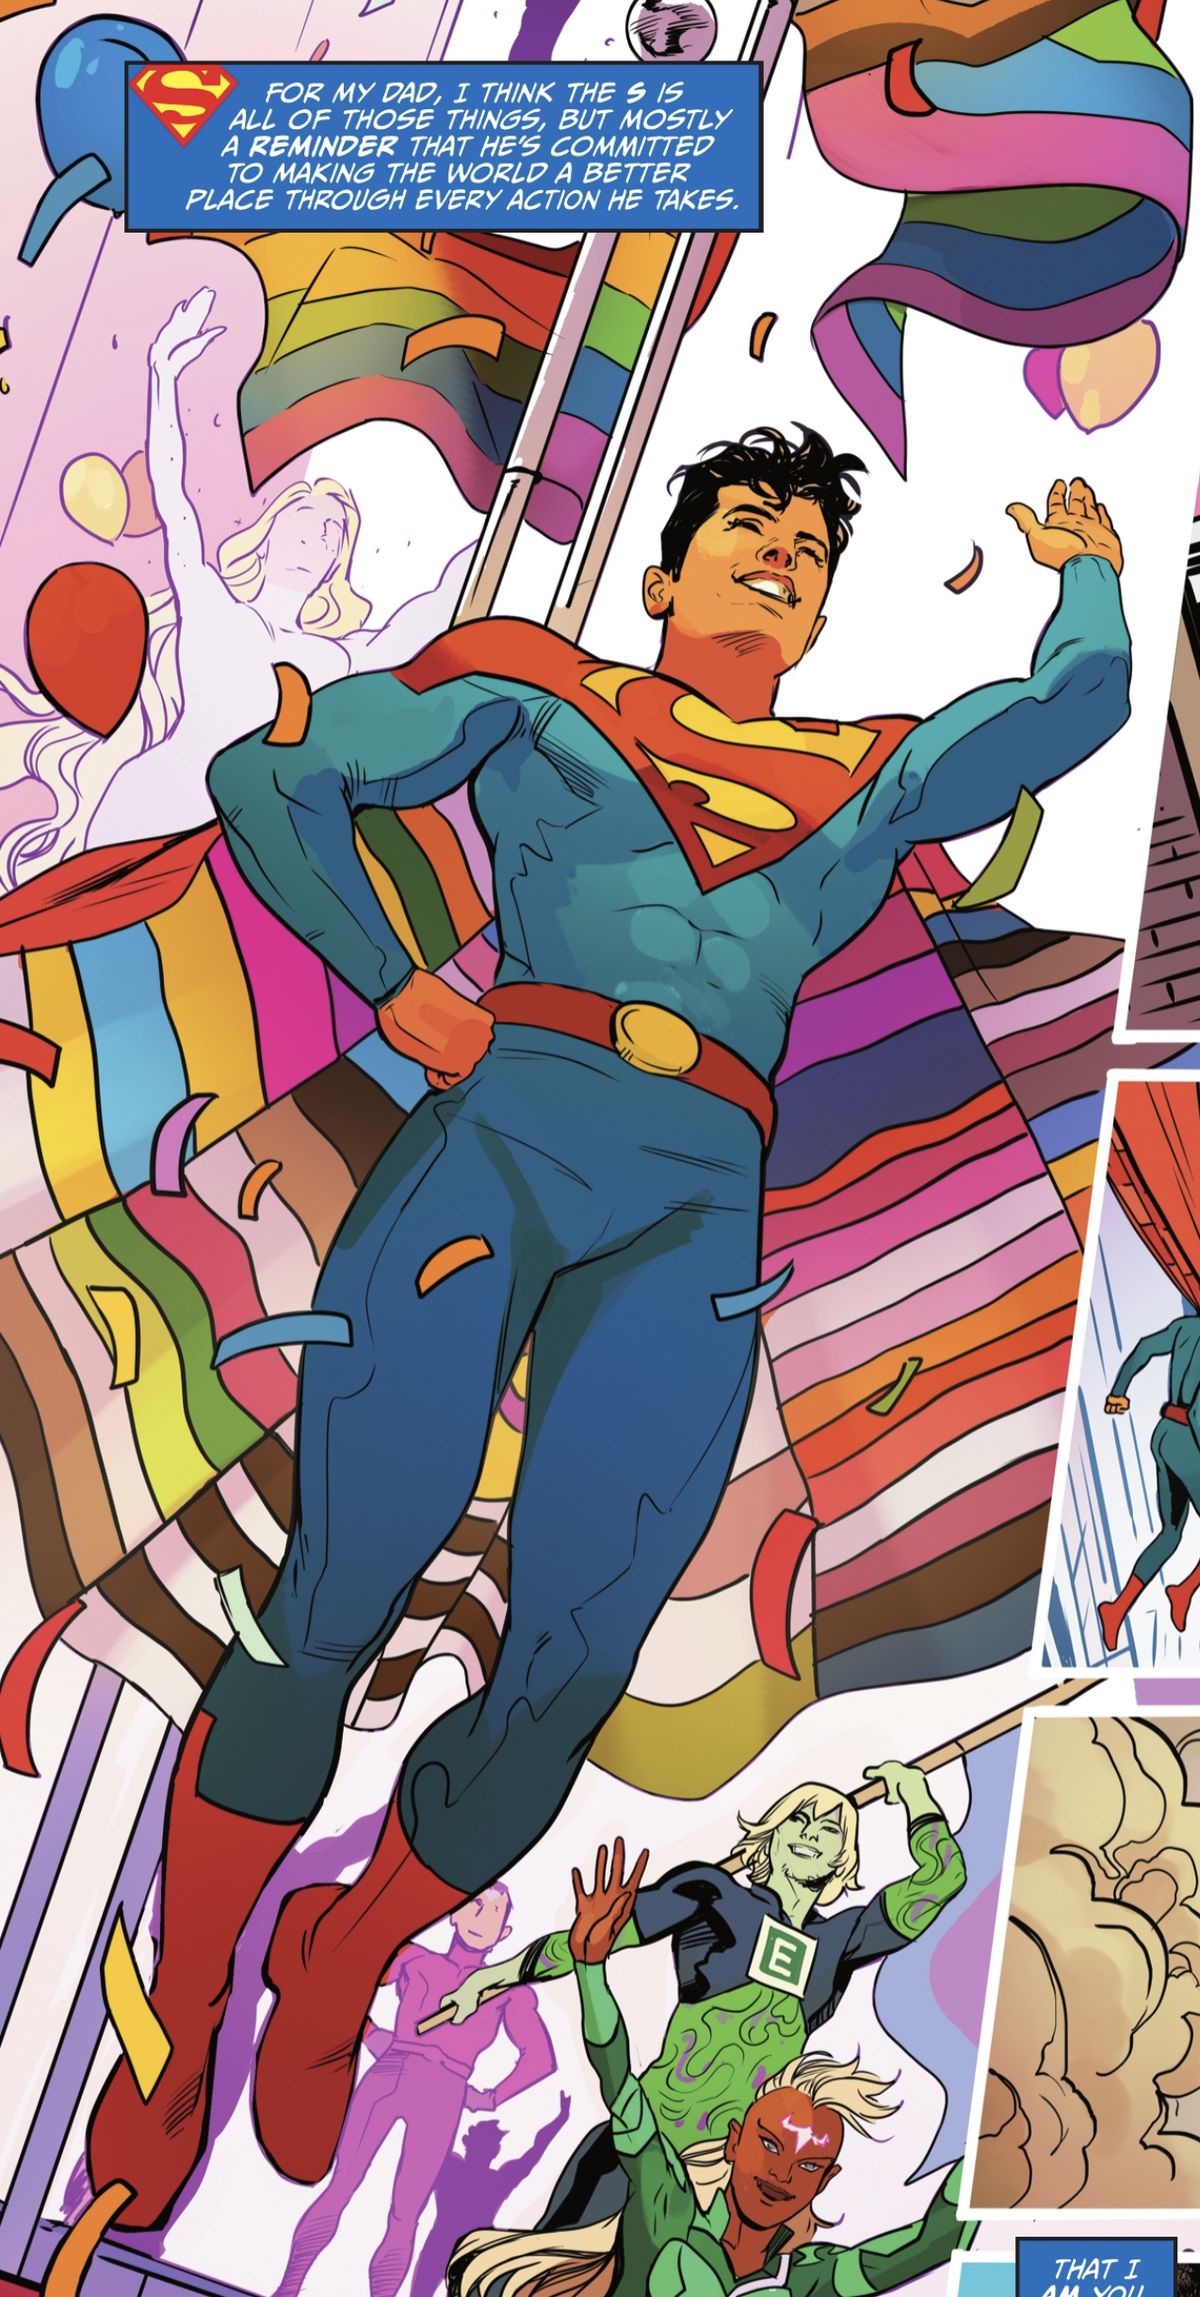 Jon Kent/Superman si libra sopra un carro da parata del Pride, salutando la folla.  Indossa il suo costume da Superman, con un mantello foderato con i colori di molte bandiere del Pride, in DC Pride 2022. 